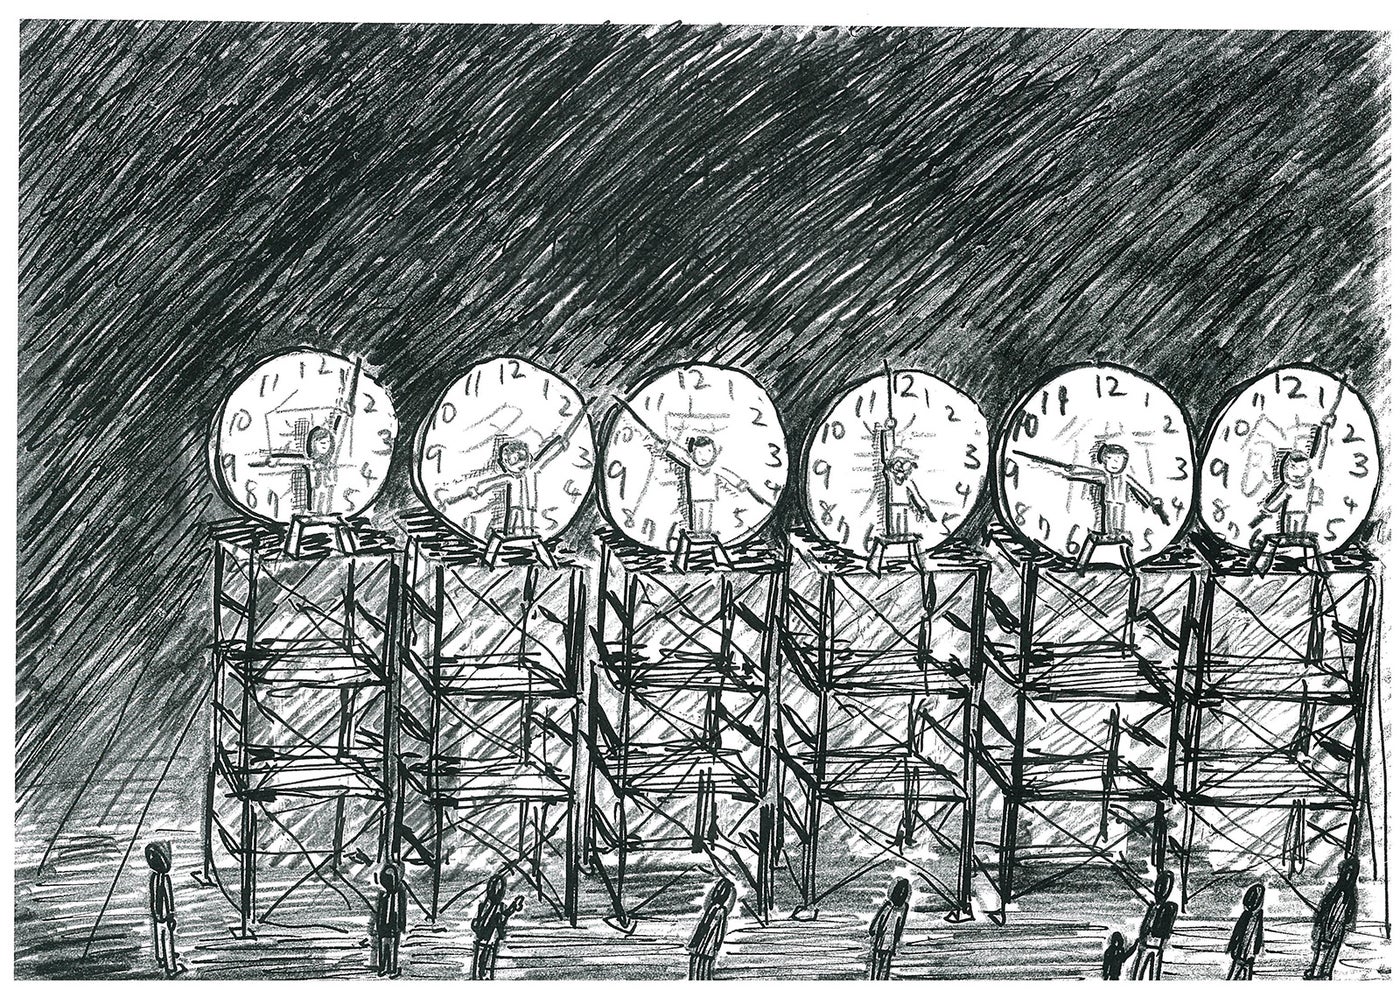 （C）《24時間⼈間時計のためのドローイング》《Drawing for 24h Human Clock》